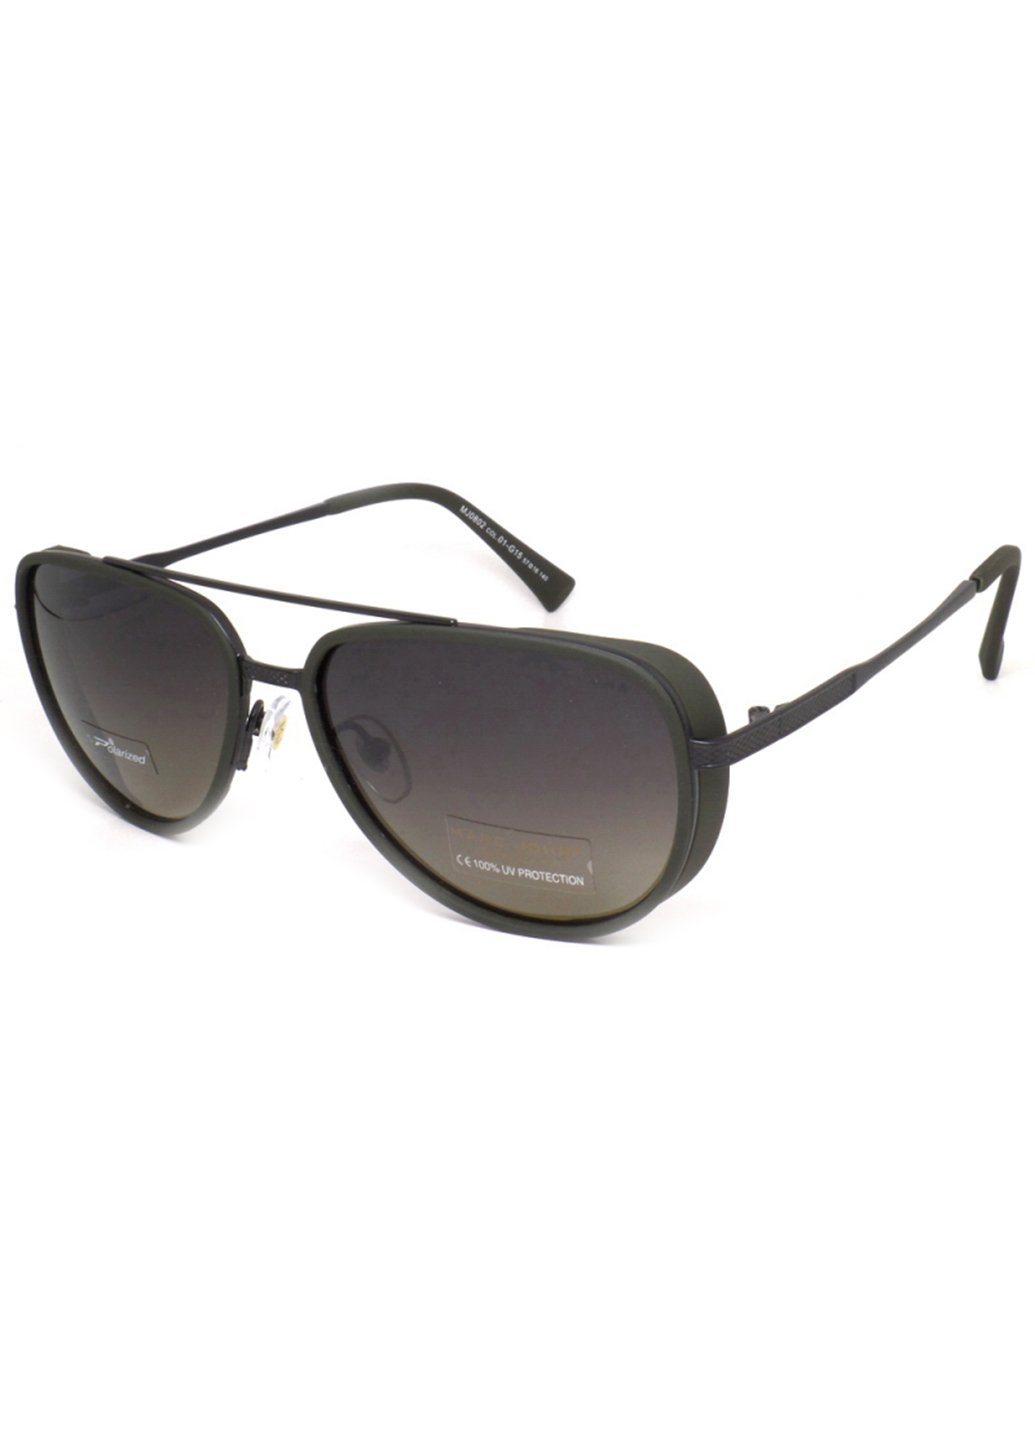 Купить Мужские солнцезащитные очки Marc John с поляризацией MJ0802 190001 - Черный в интернет-магазине